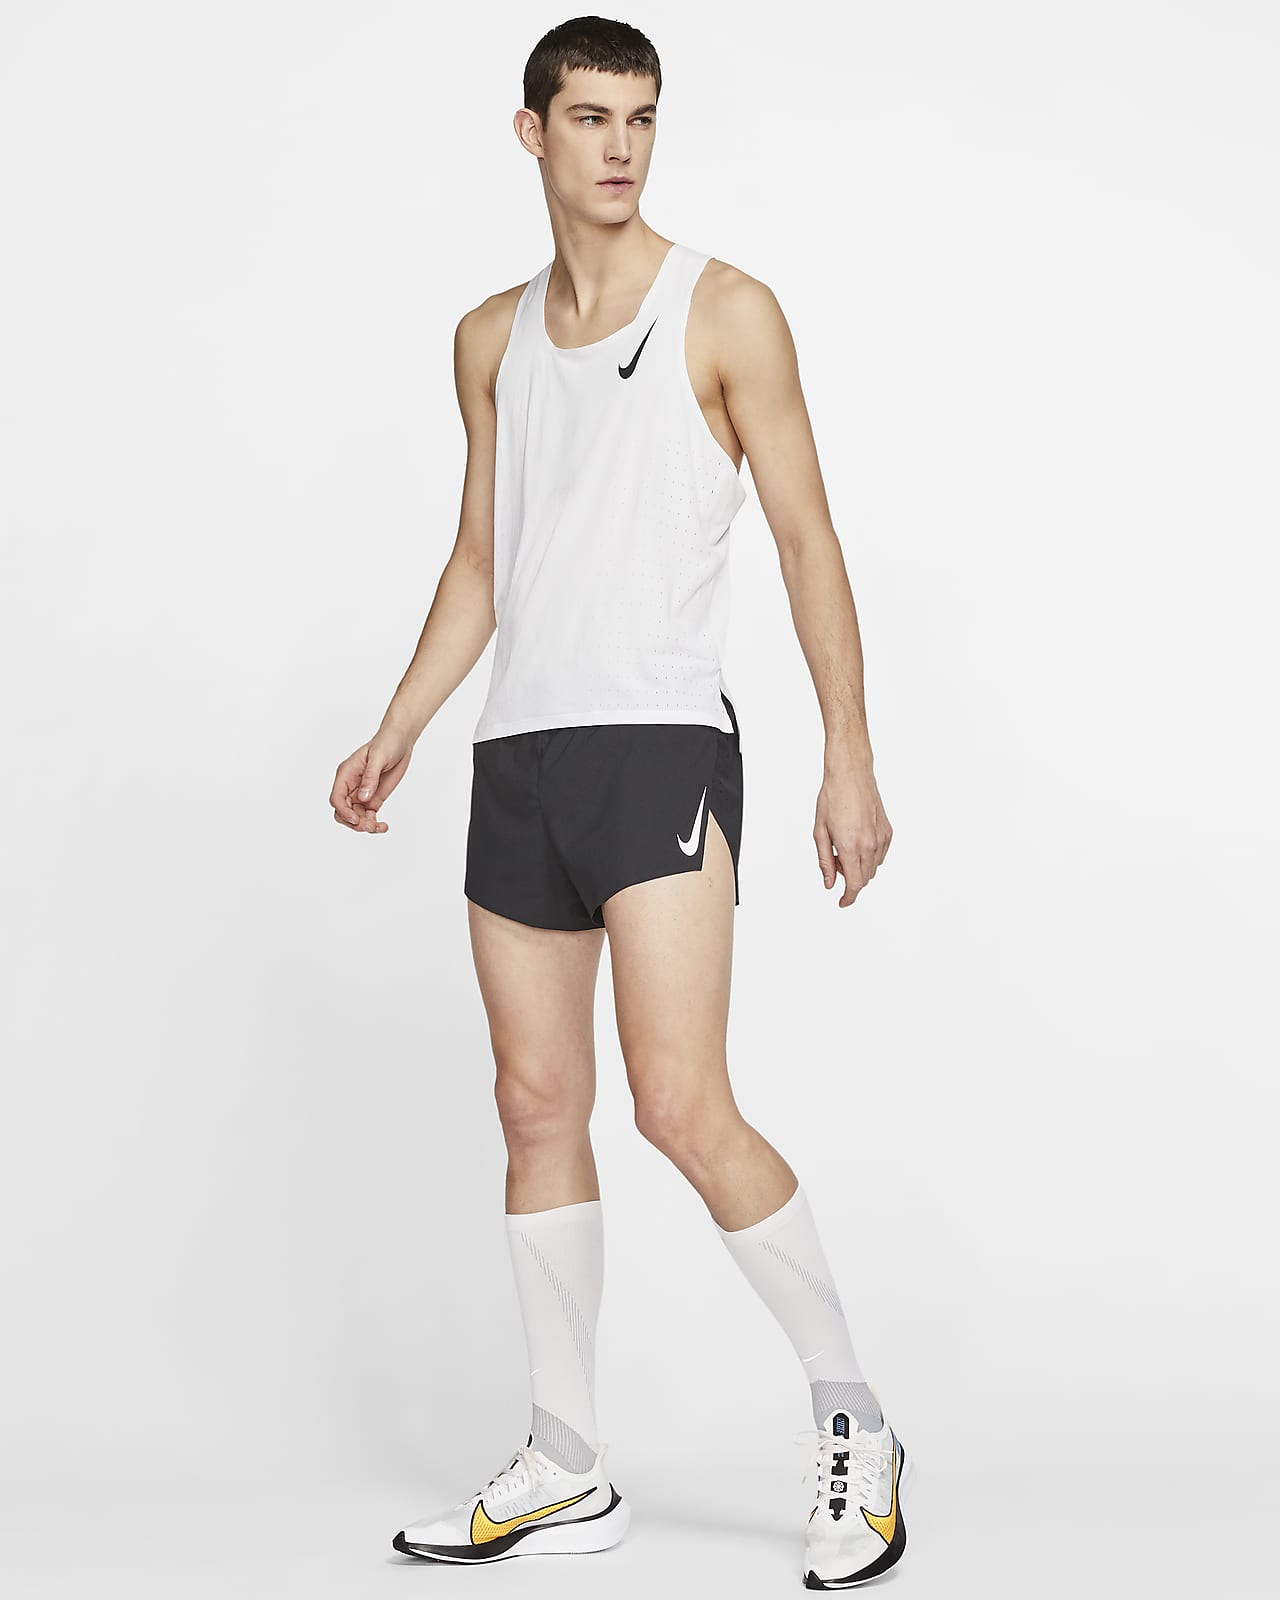 Nike Aeroswift 2 Running Shorts - Men's Medium ~ $80.00 CJ7837